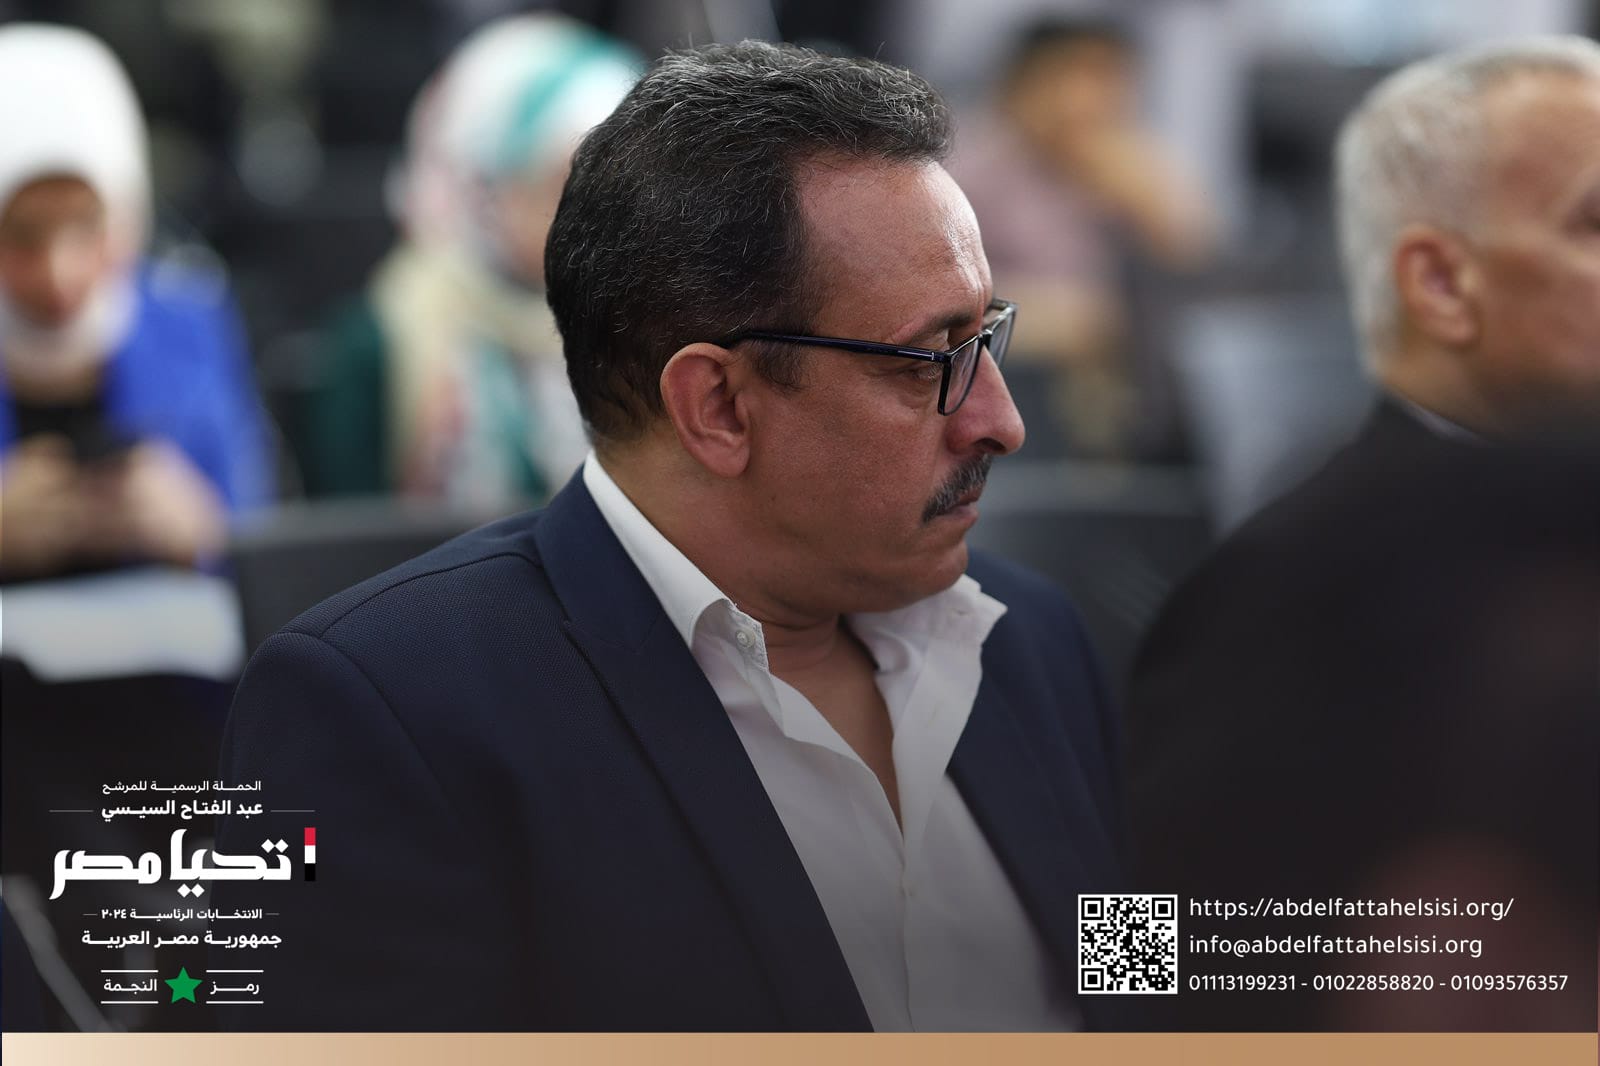 الحملة الرسمية للمرشح الرئاسى عبد الفتاح السيسي تستقبل وفداً من النقابة العامة لأعمال النقل الجوي   (19)